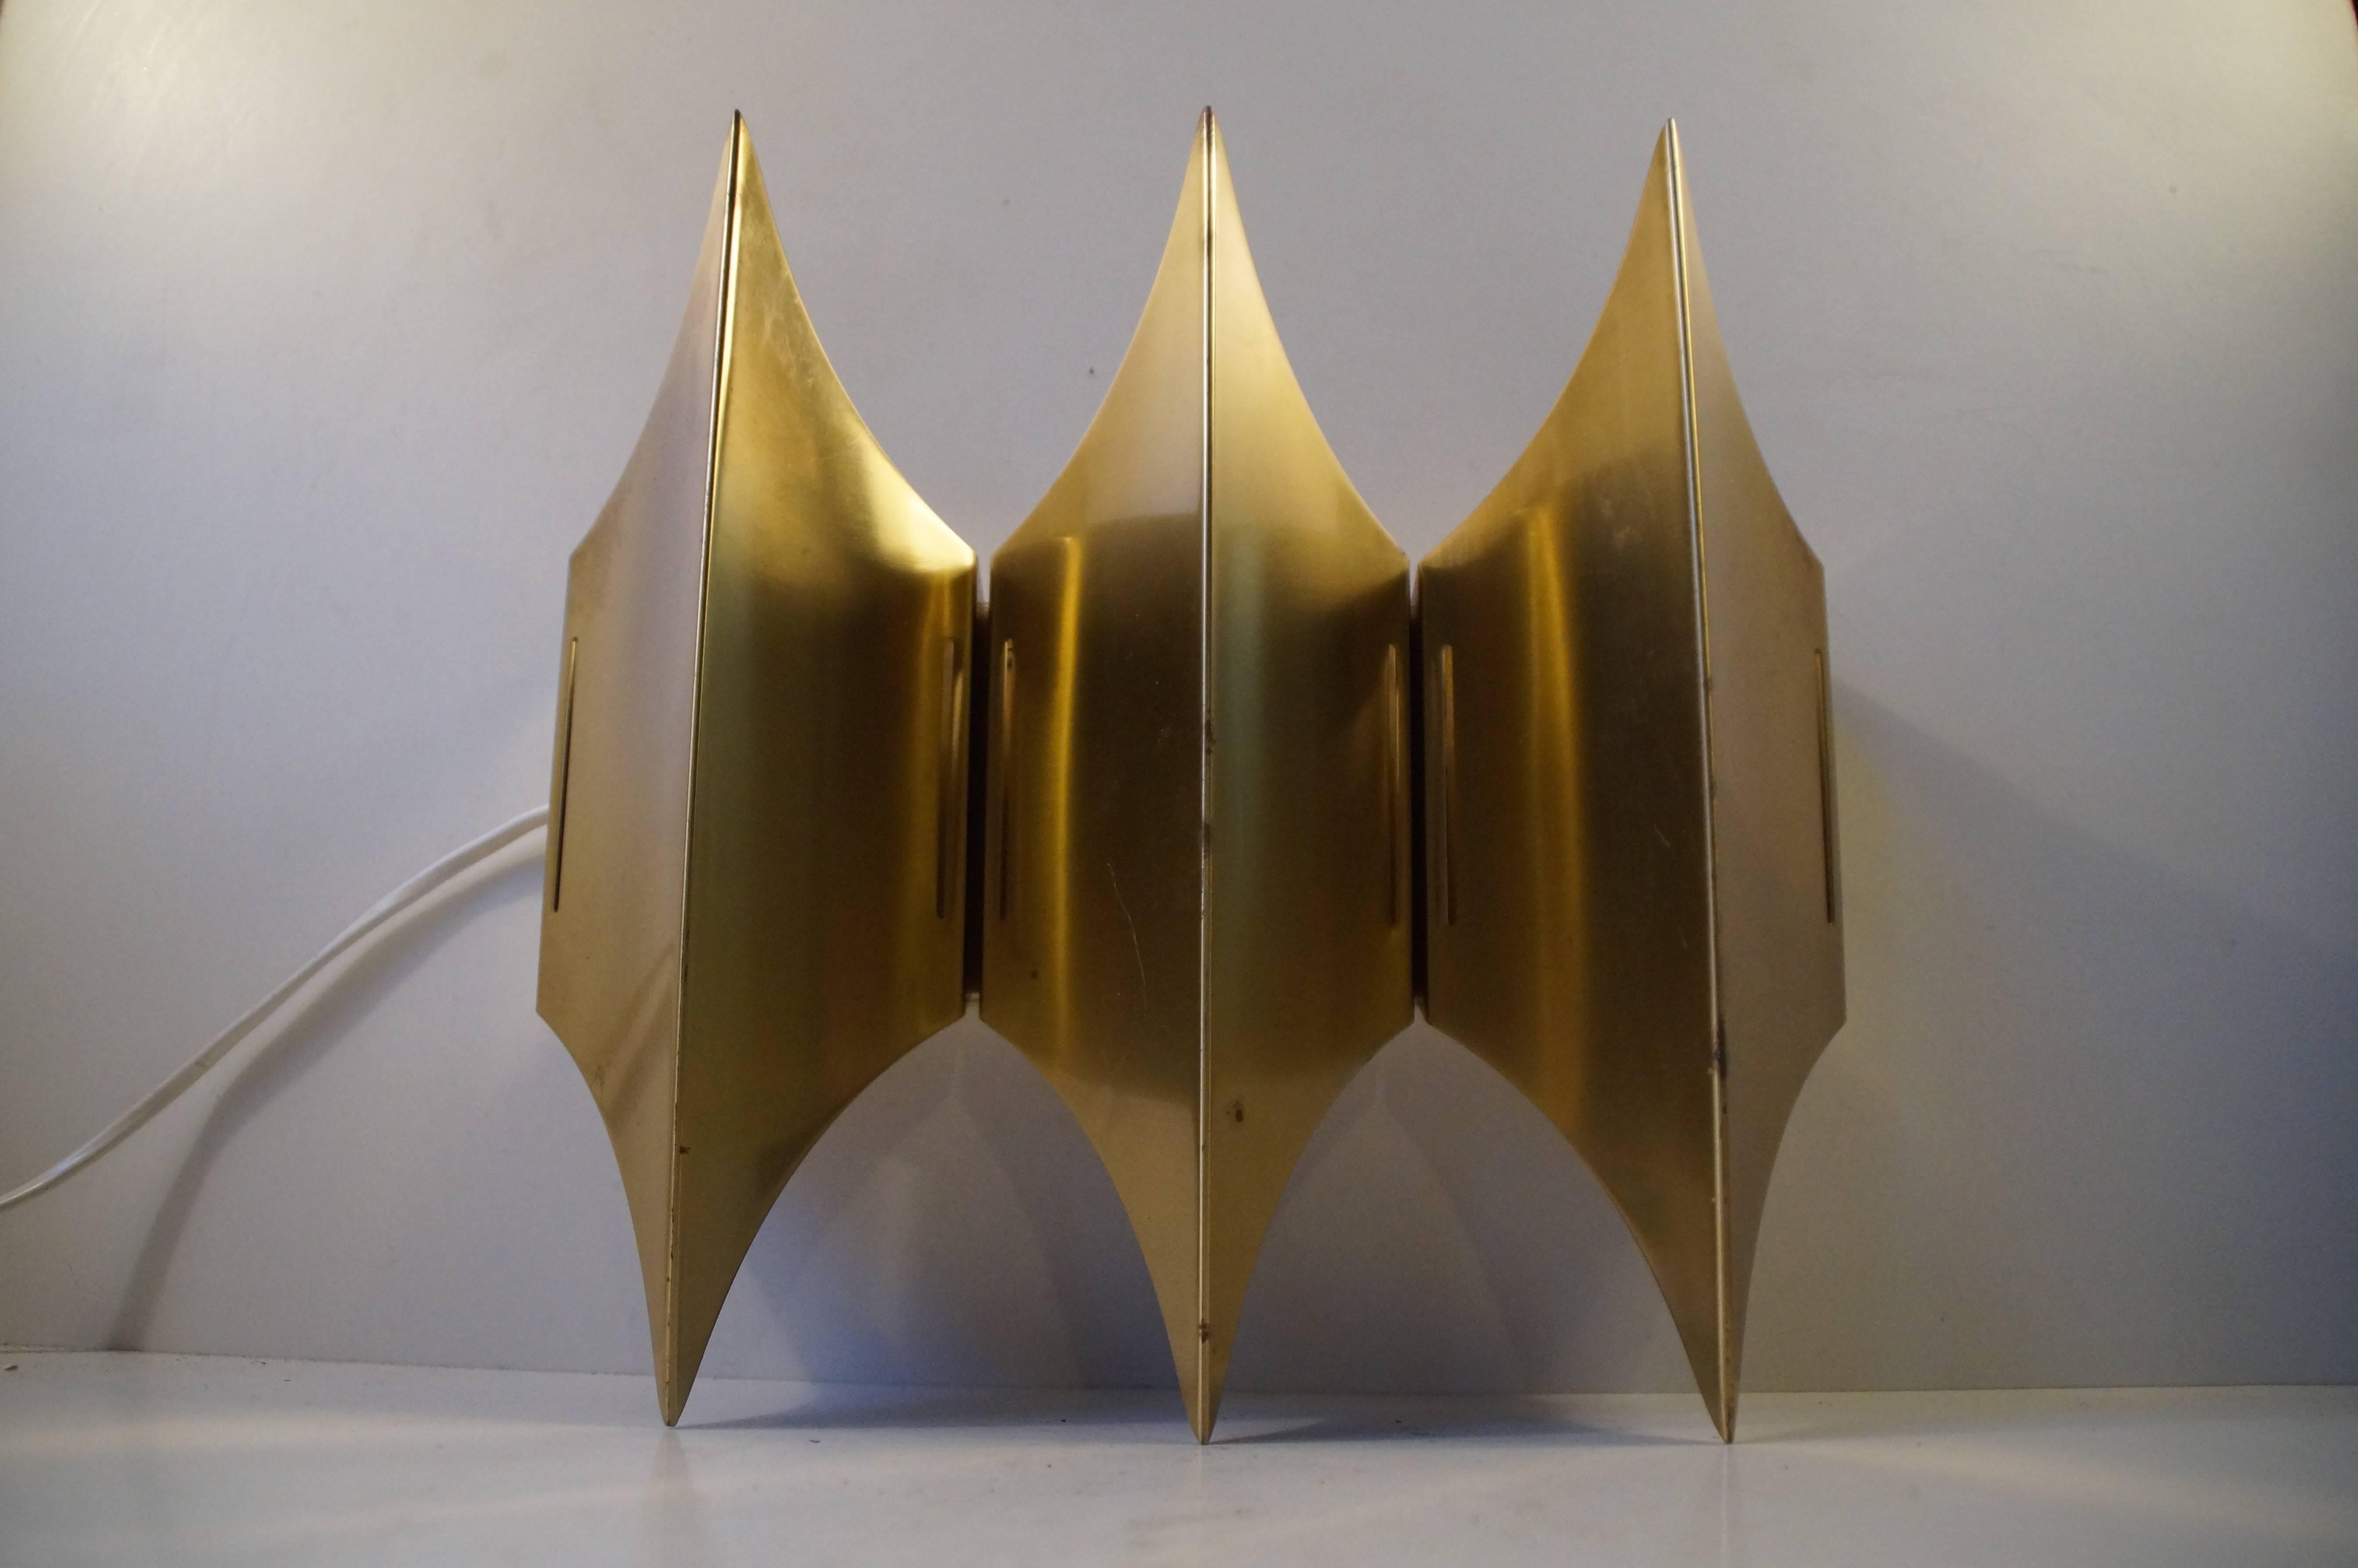 Gotische III-Leuchte, hergestellt von Lyfa, Dänemark, in den 1960er Jahren. Dieses Stück skandinavischen Designs ist aus gebürstetem, massivem Messing gefertigt, das die drei horizontalen Wappen betont. Der Wandleuchter erinnert an die europäische